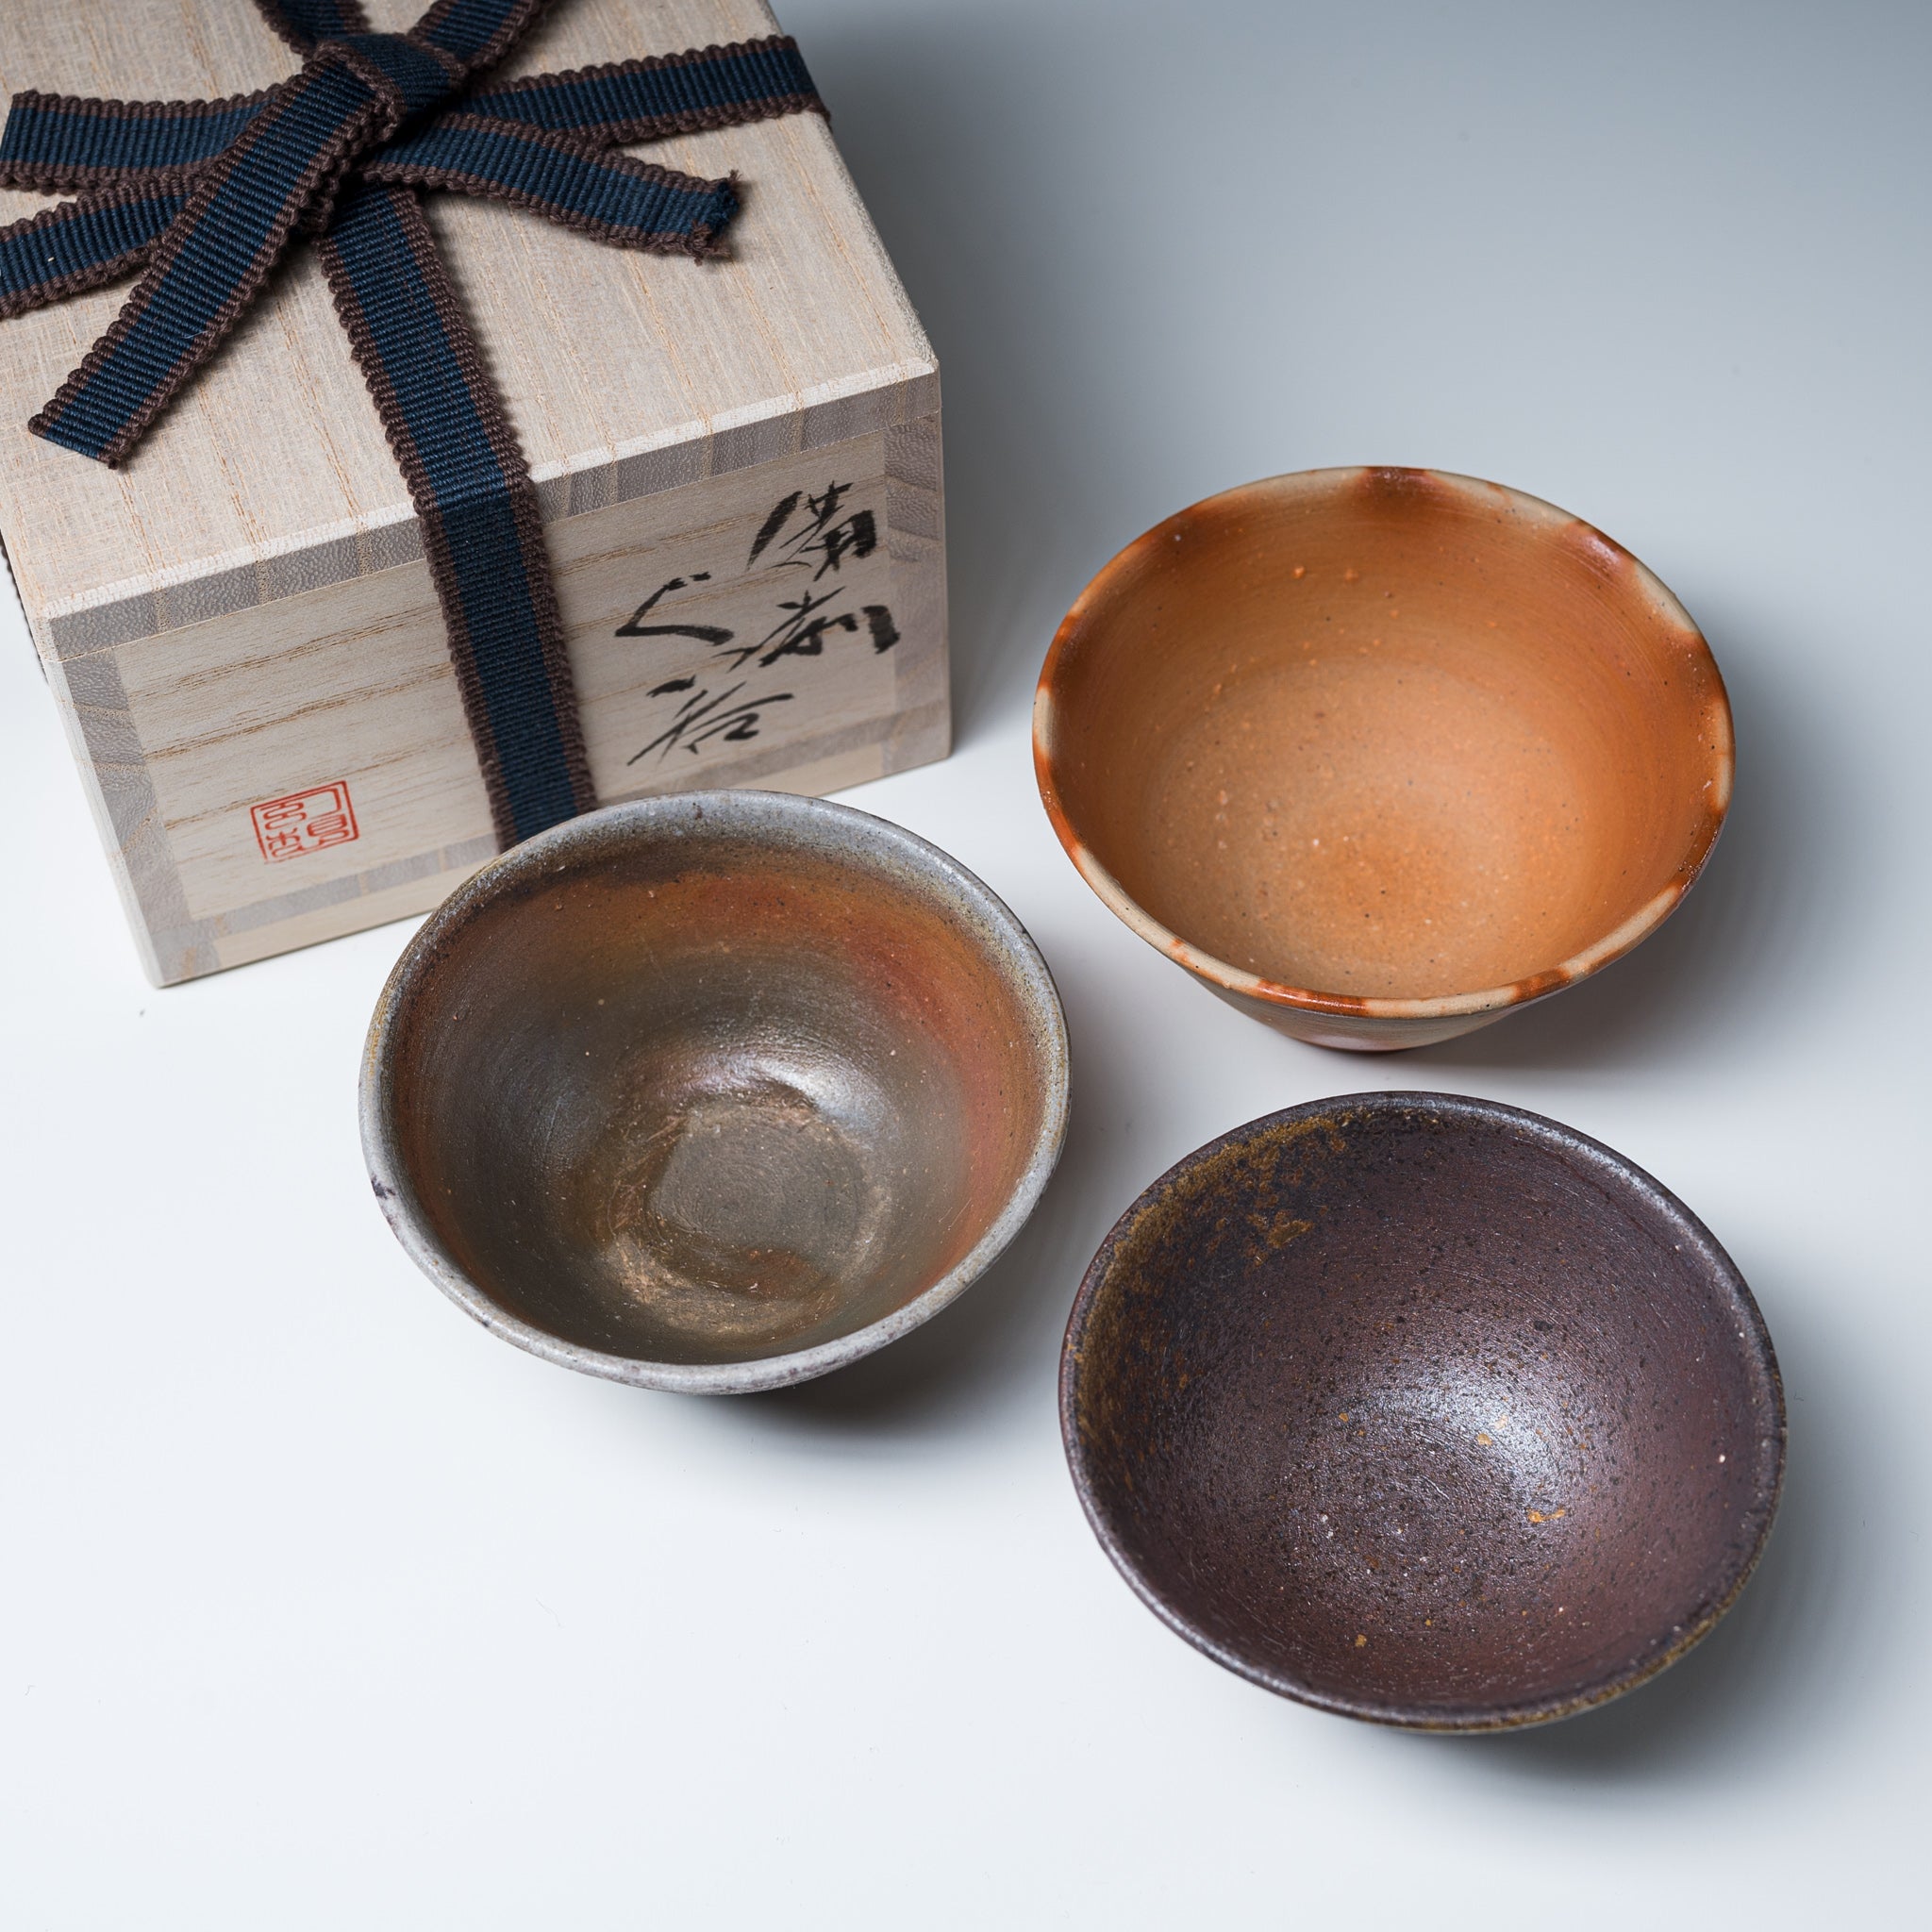 Bizen Pottery Sakazuki Sake Cup with Wooden Box - Sangiri / 備前焼 盃